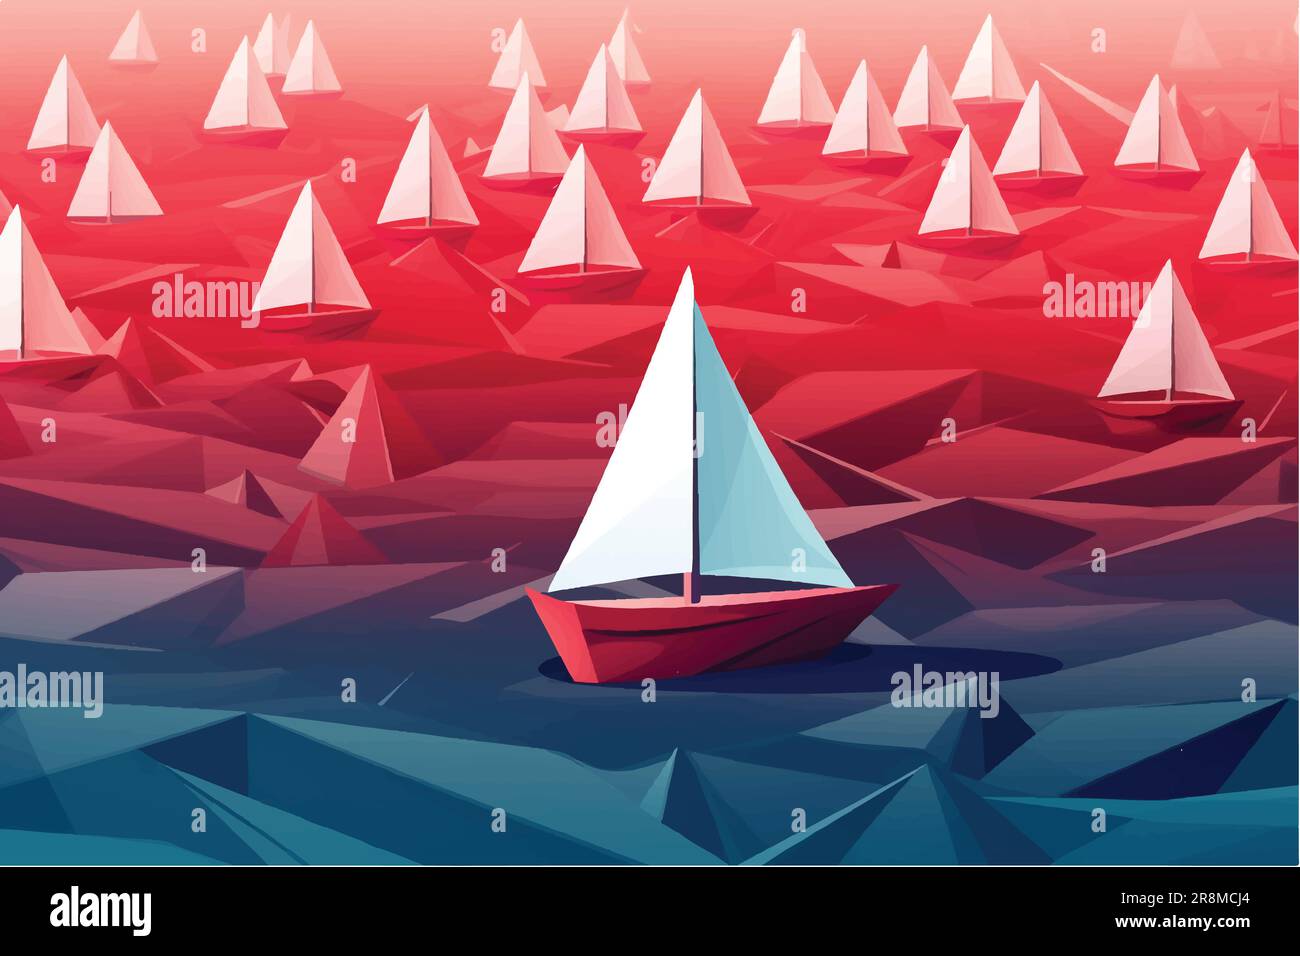 Karikaturvektor Darstellung der Flottenführerin, das rote Papierboot Origami, hebt sich von der weißen Flotte ab Stock Vektor